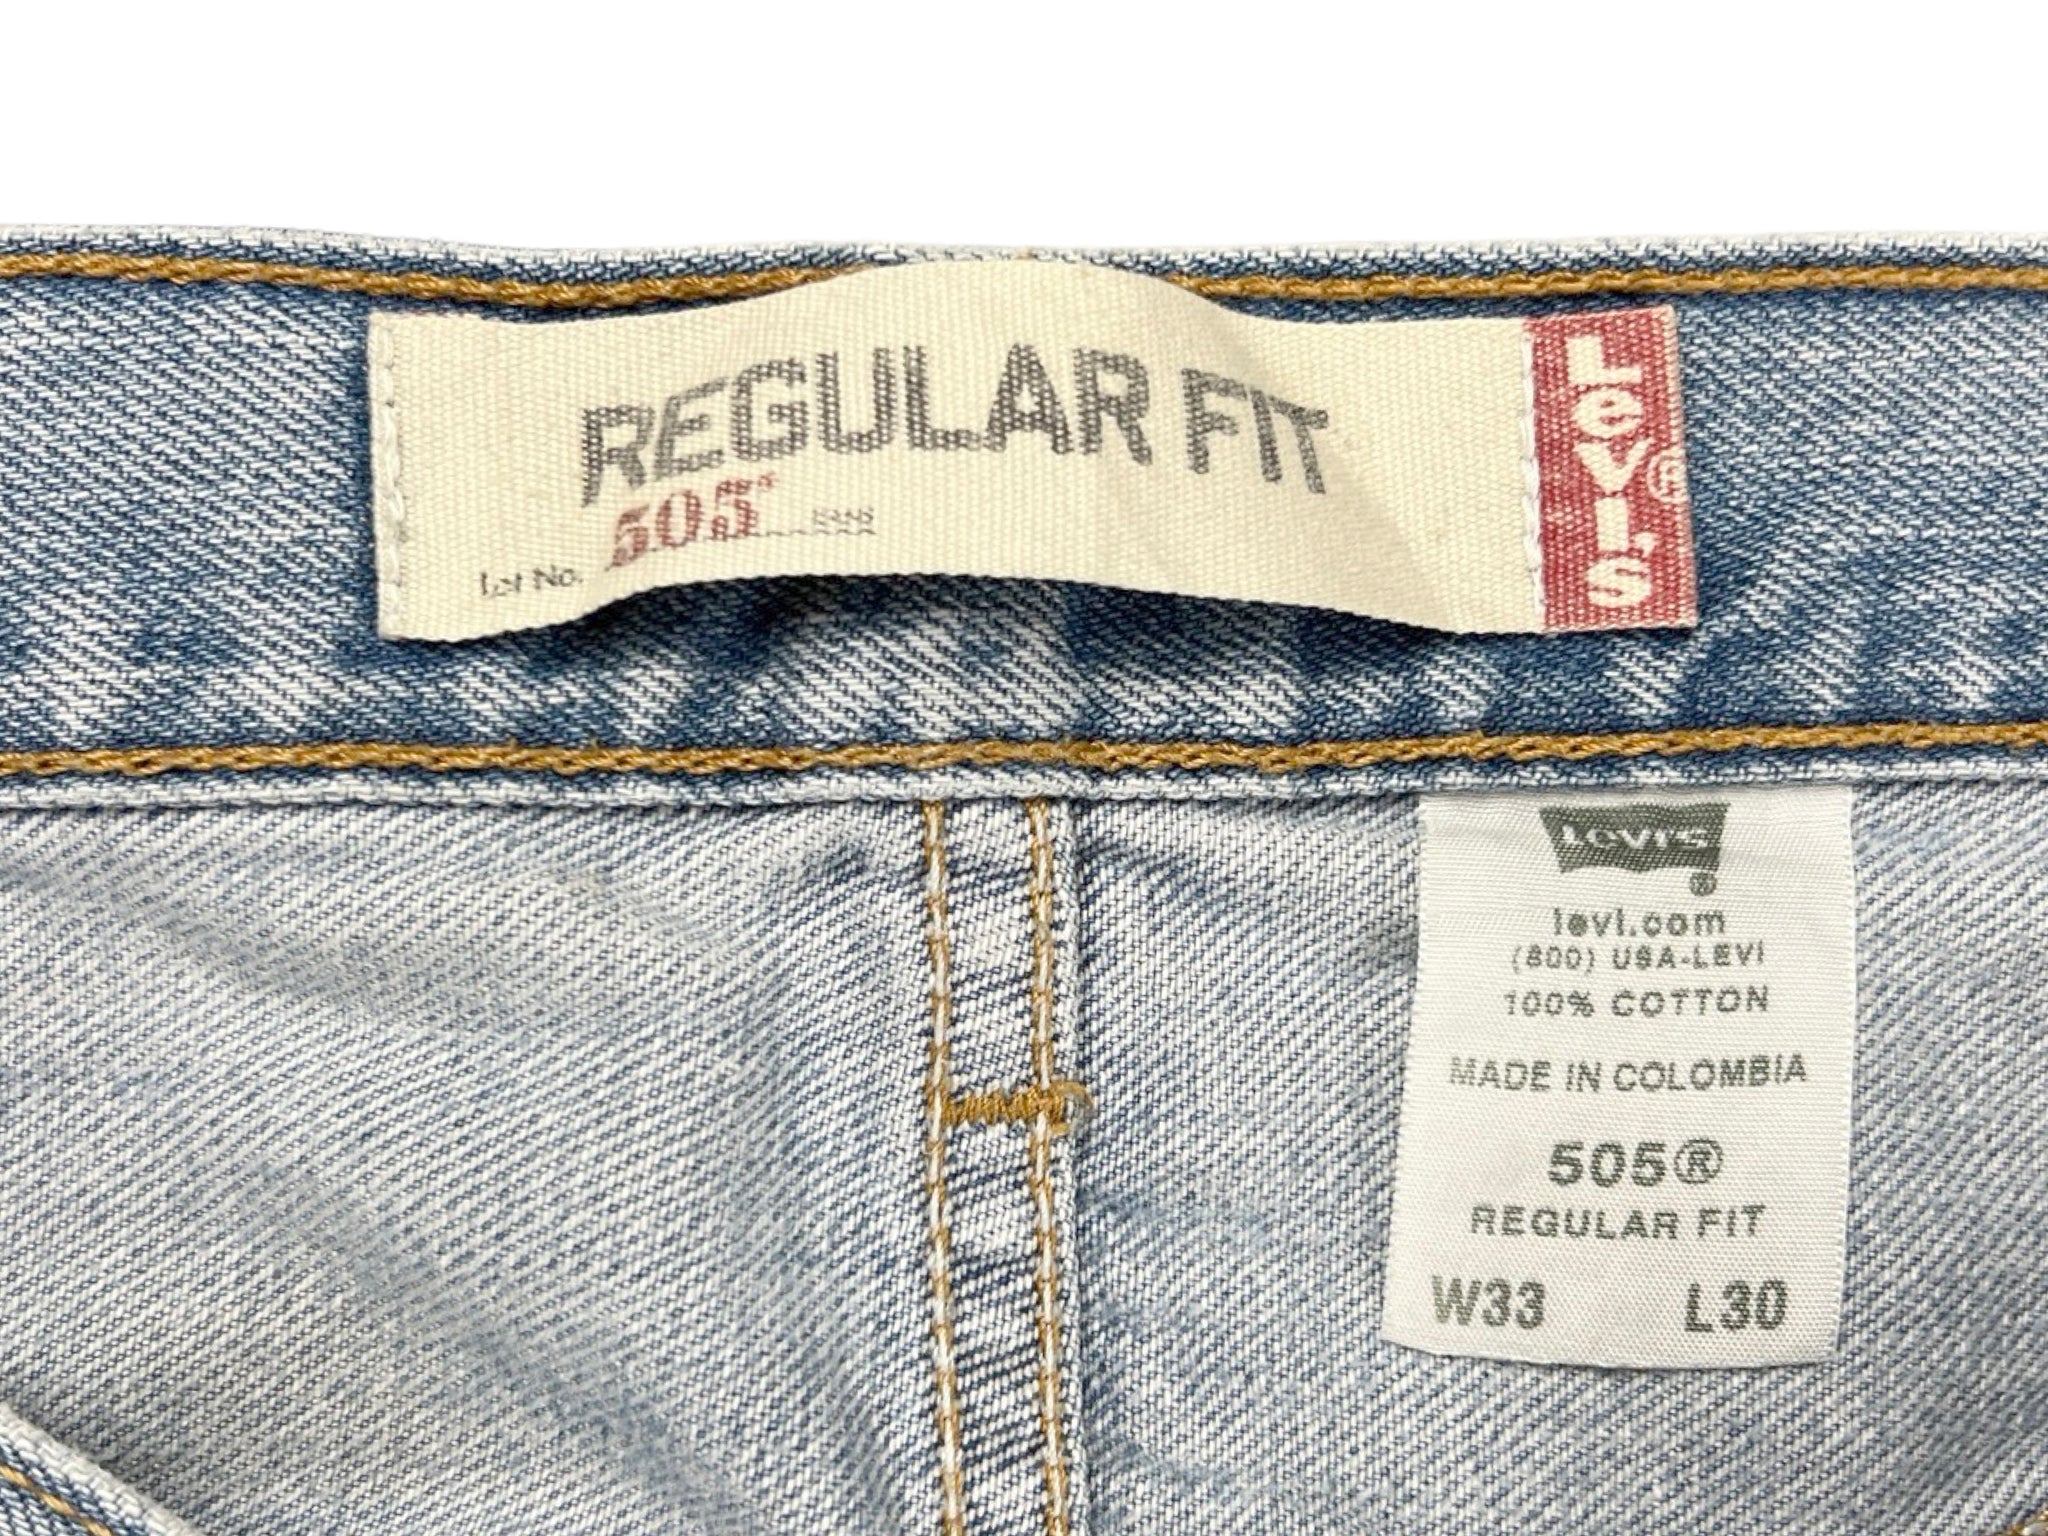 Levis 501 Paint Splattered Jeans ( 32" x 29")